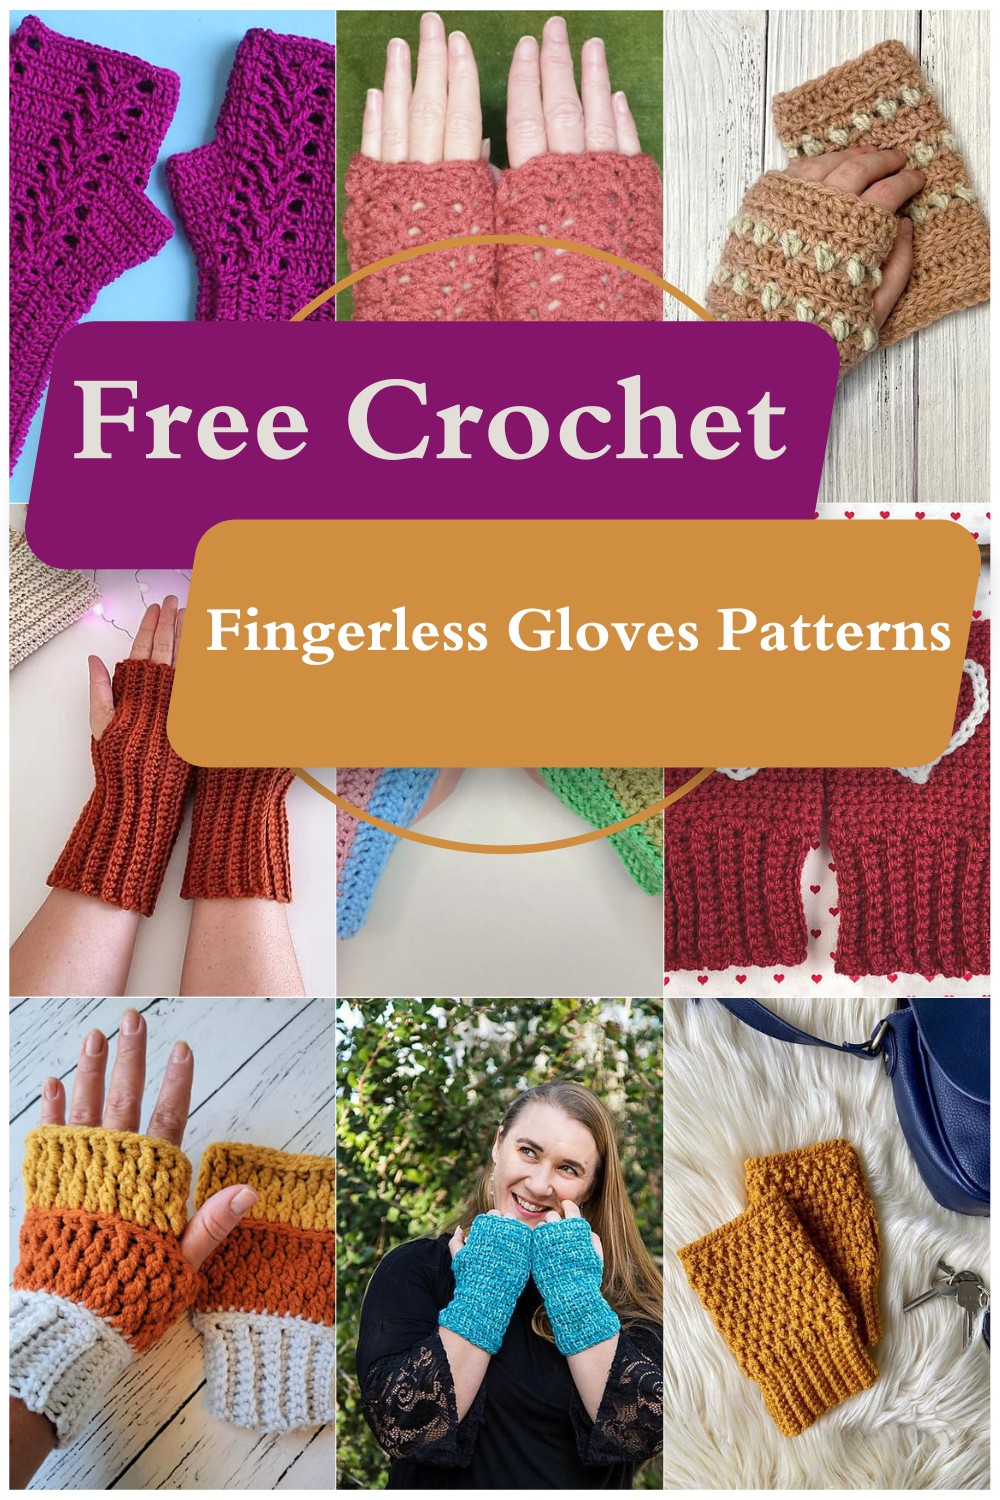 Free Crochet Fingerless Gloves Patterns 